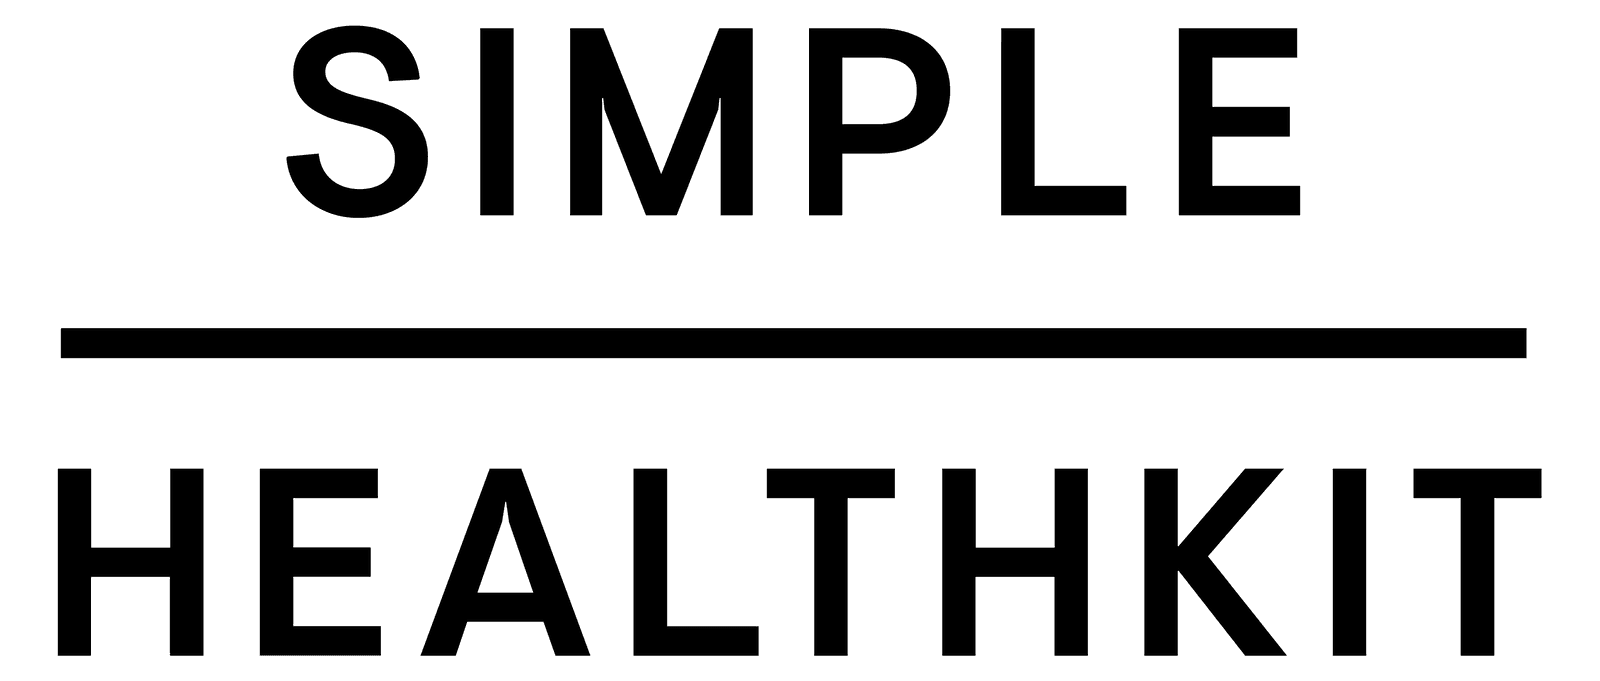 Simple HealthKit Logo.png